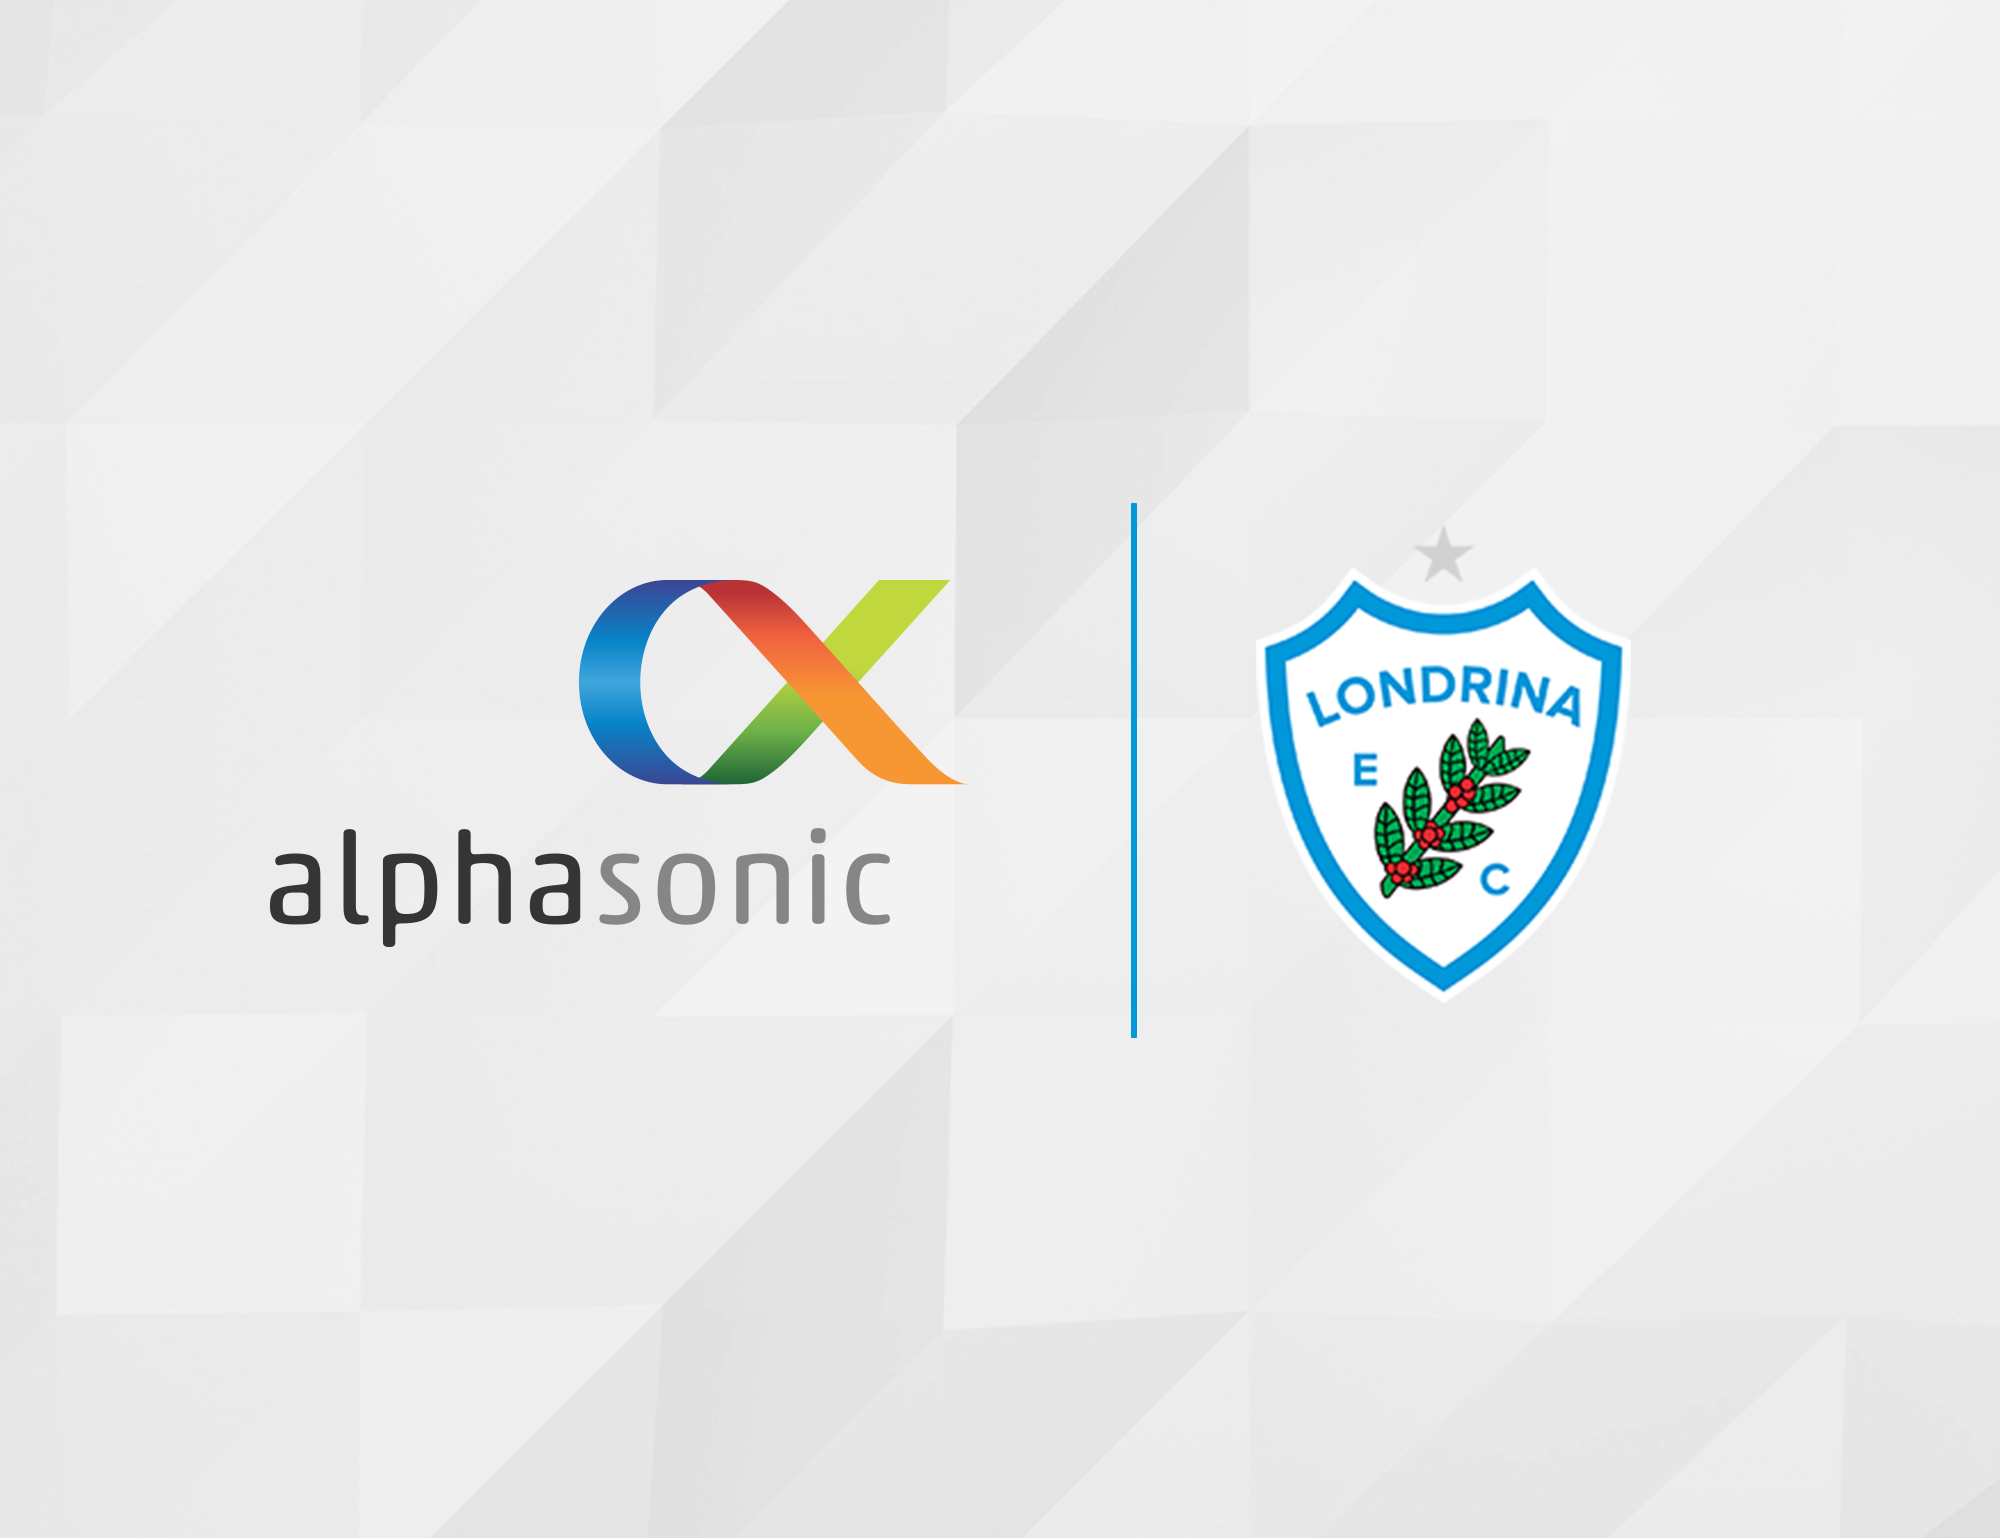 Clínica Alphasonic é a nova parceira do Londrina EC